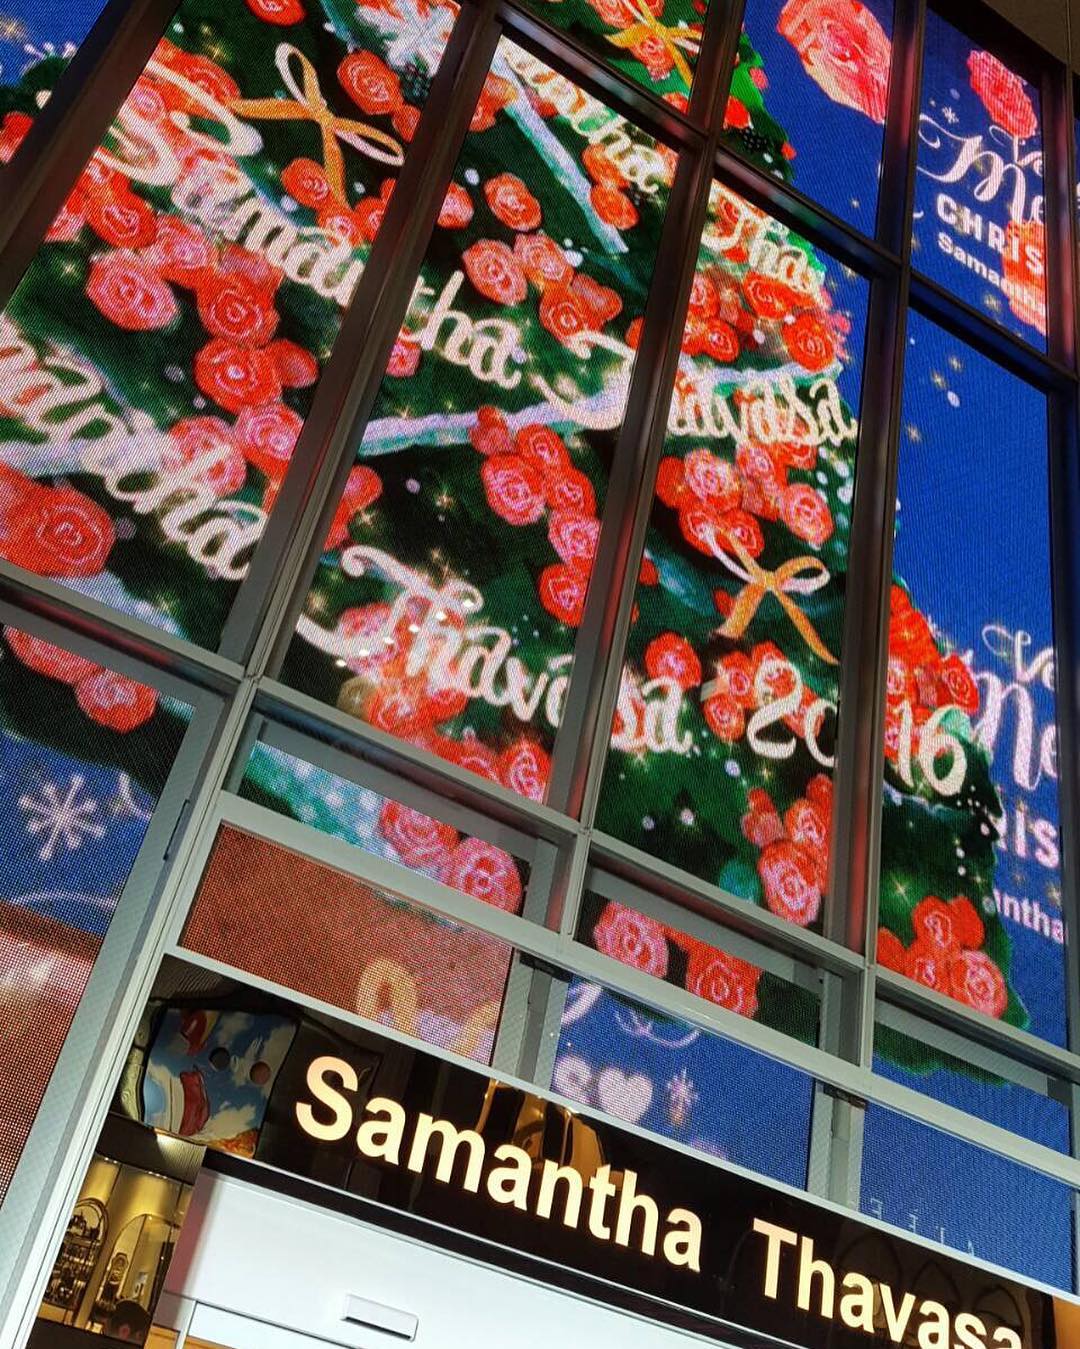 Cancam じゃん サマンサタバサ表参道gatesポップアップデジタルストアのクリスマスビジョンは こちら おっきすぎて 入りません 期間限定だから 早めに見に行かなくち Wacoca Japan People Life Style